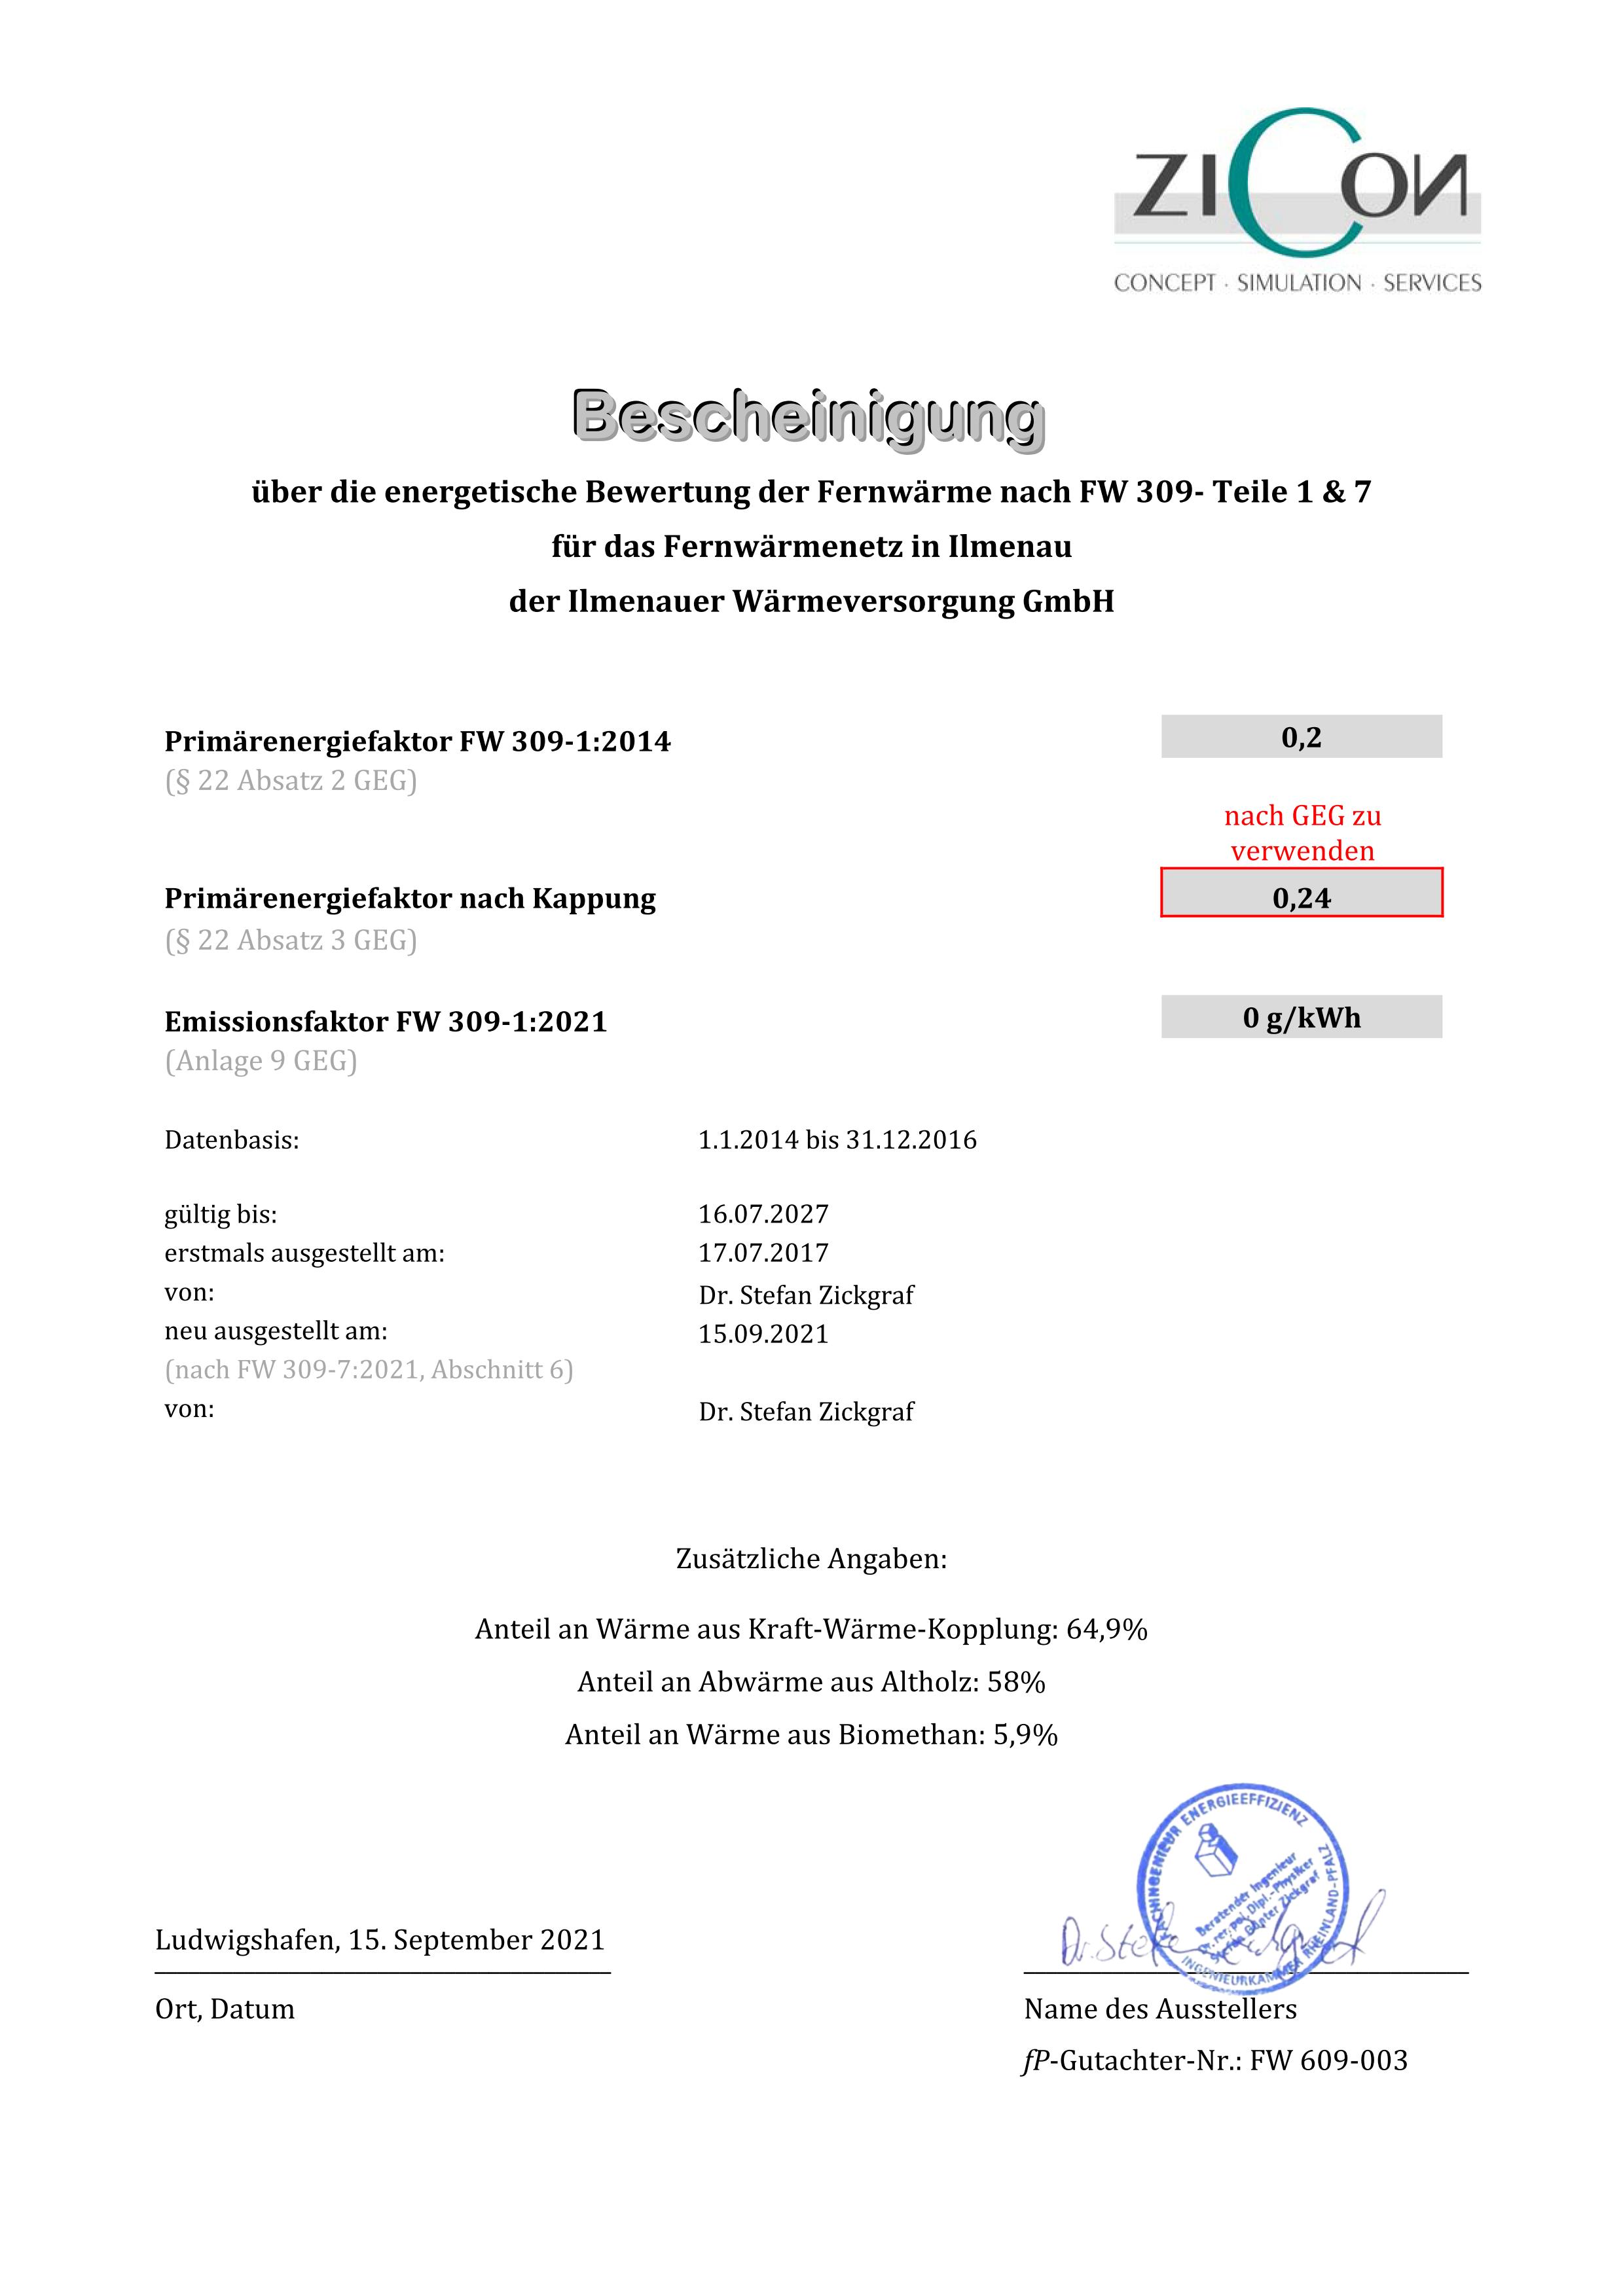 IWV Ilmenauer Wärmeversorgung GmbH - Zertifizierung